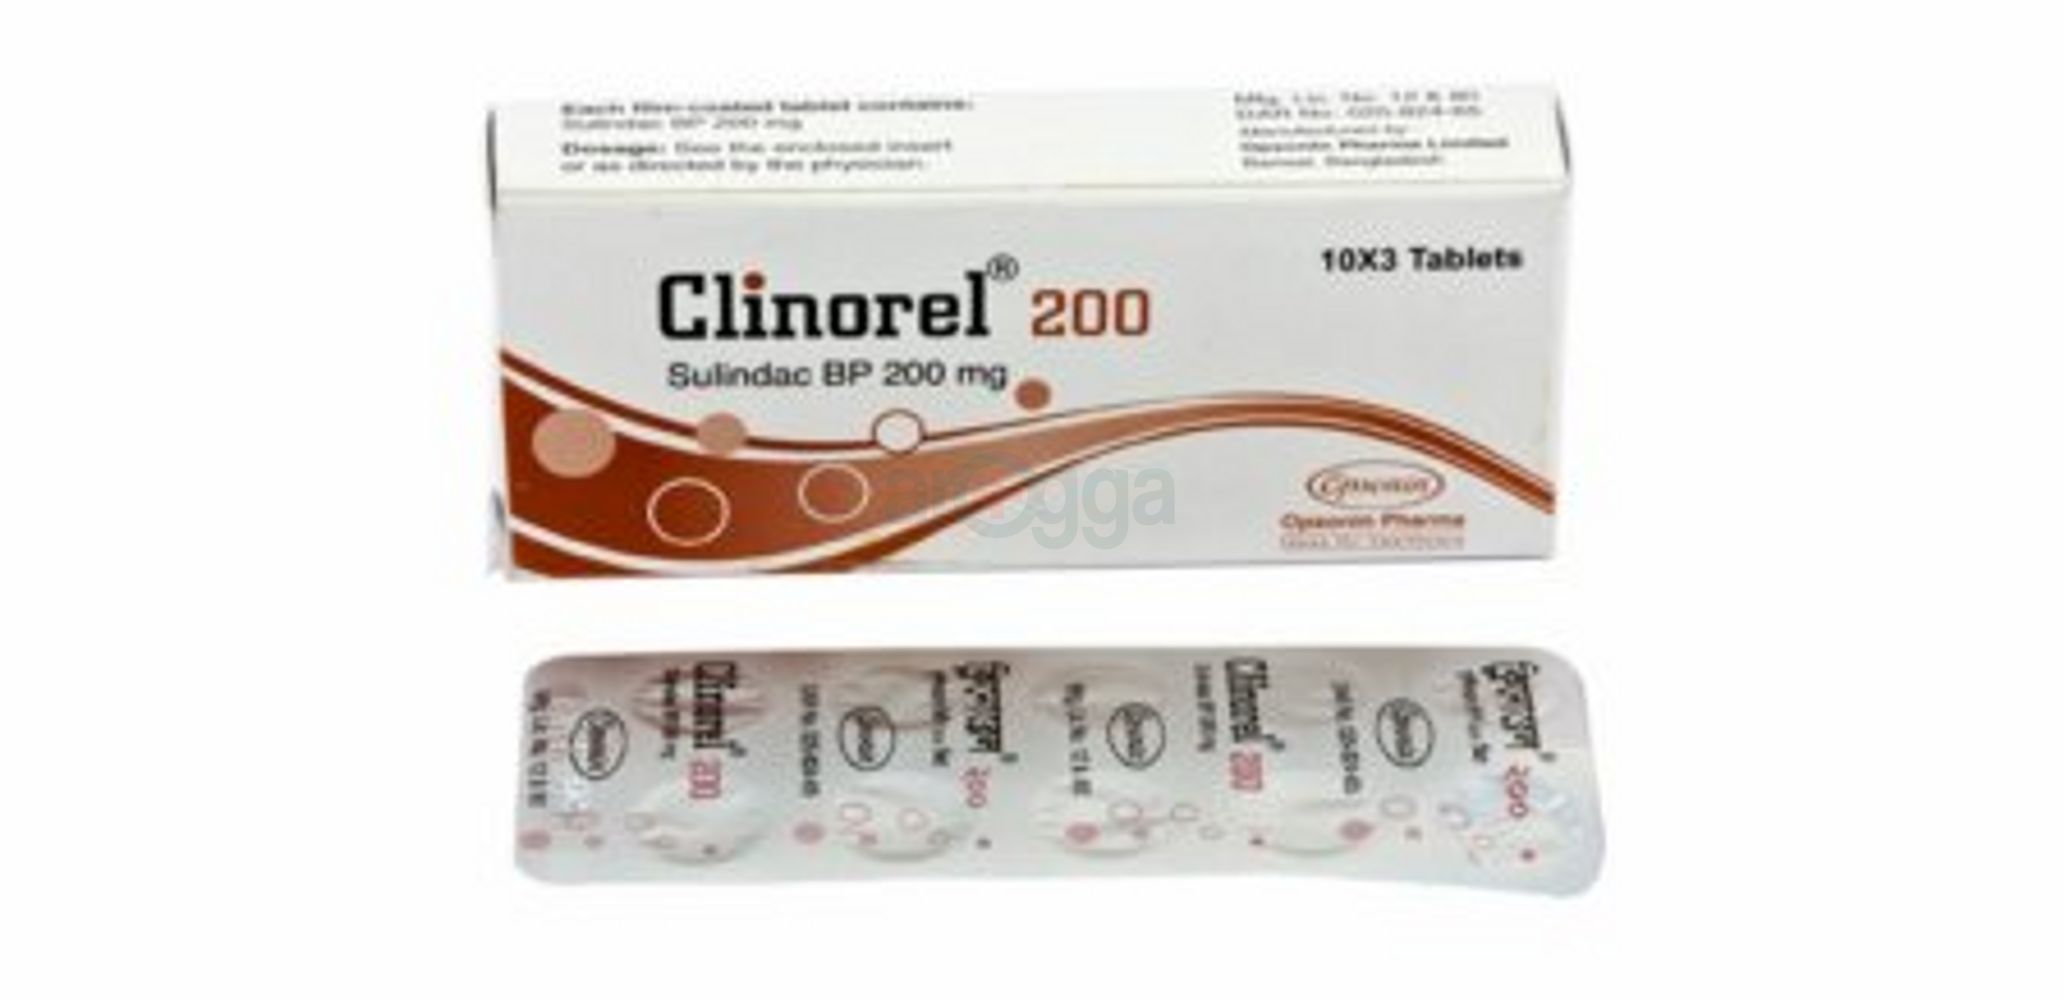 Clinorel